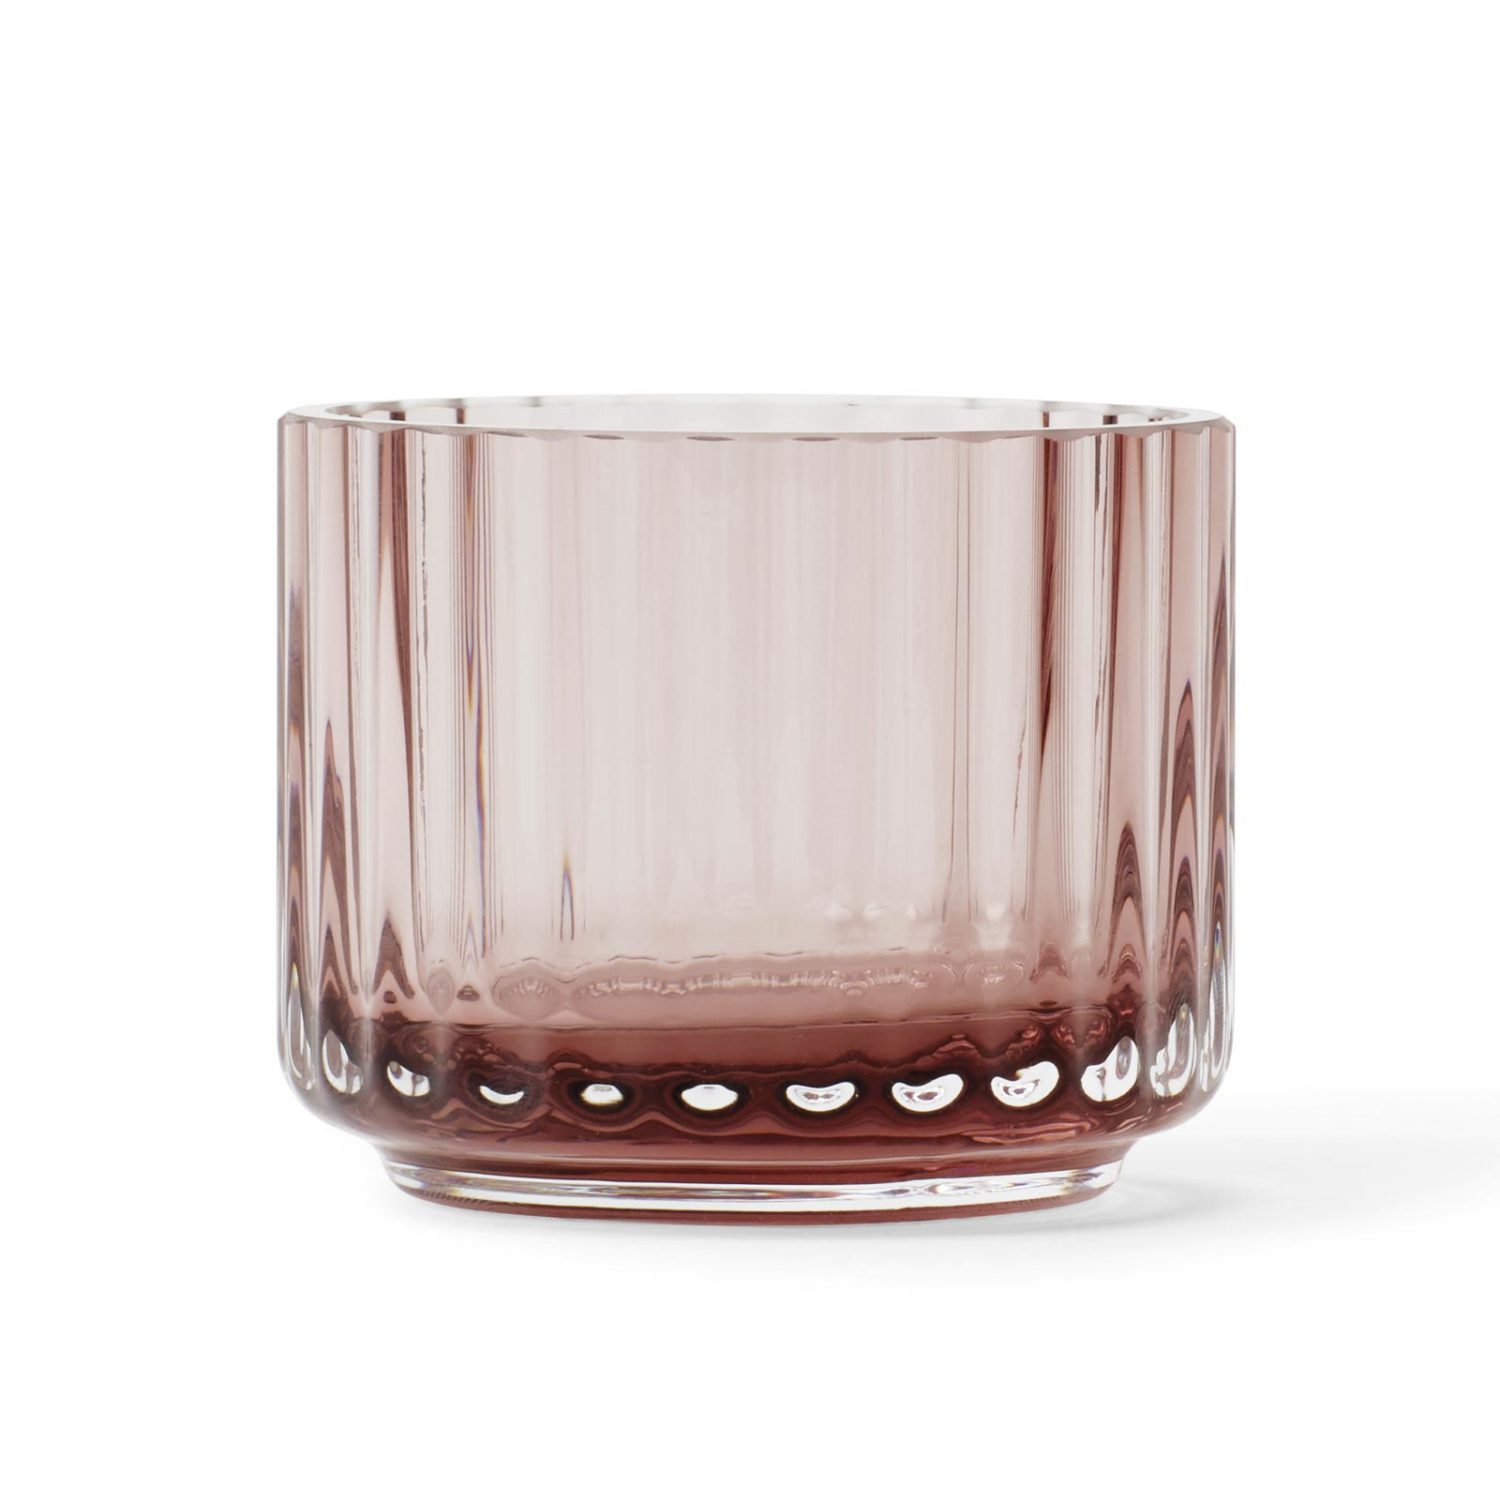 Lyngby Teelicht aus burgunderfarbenem Glas bei der Boutique Danoise